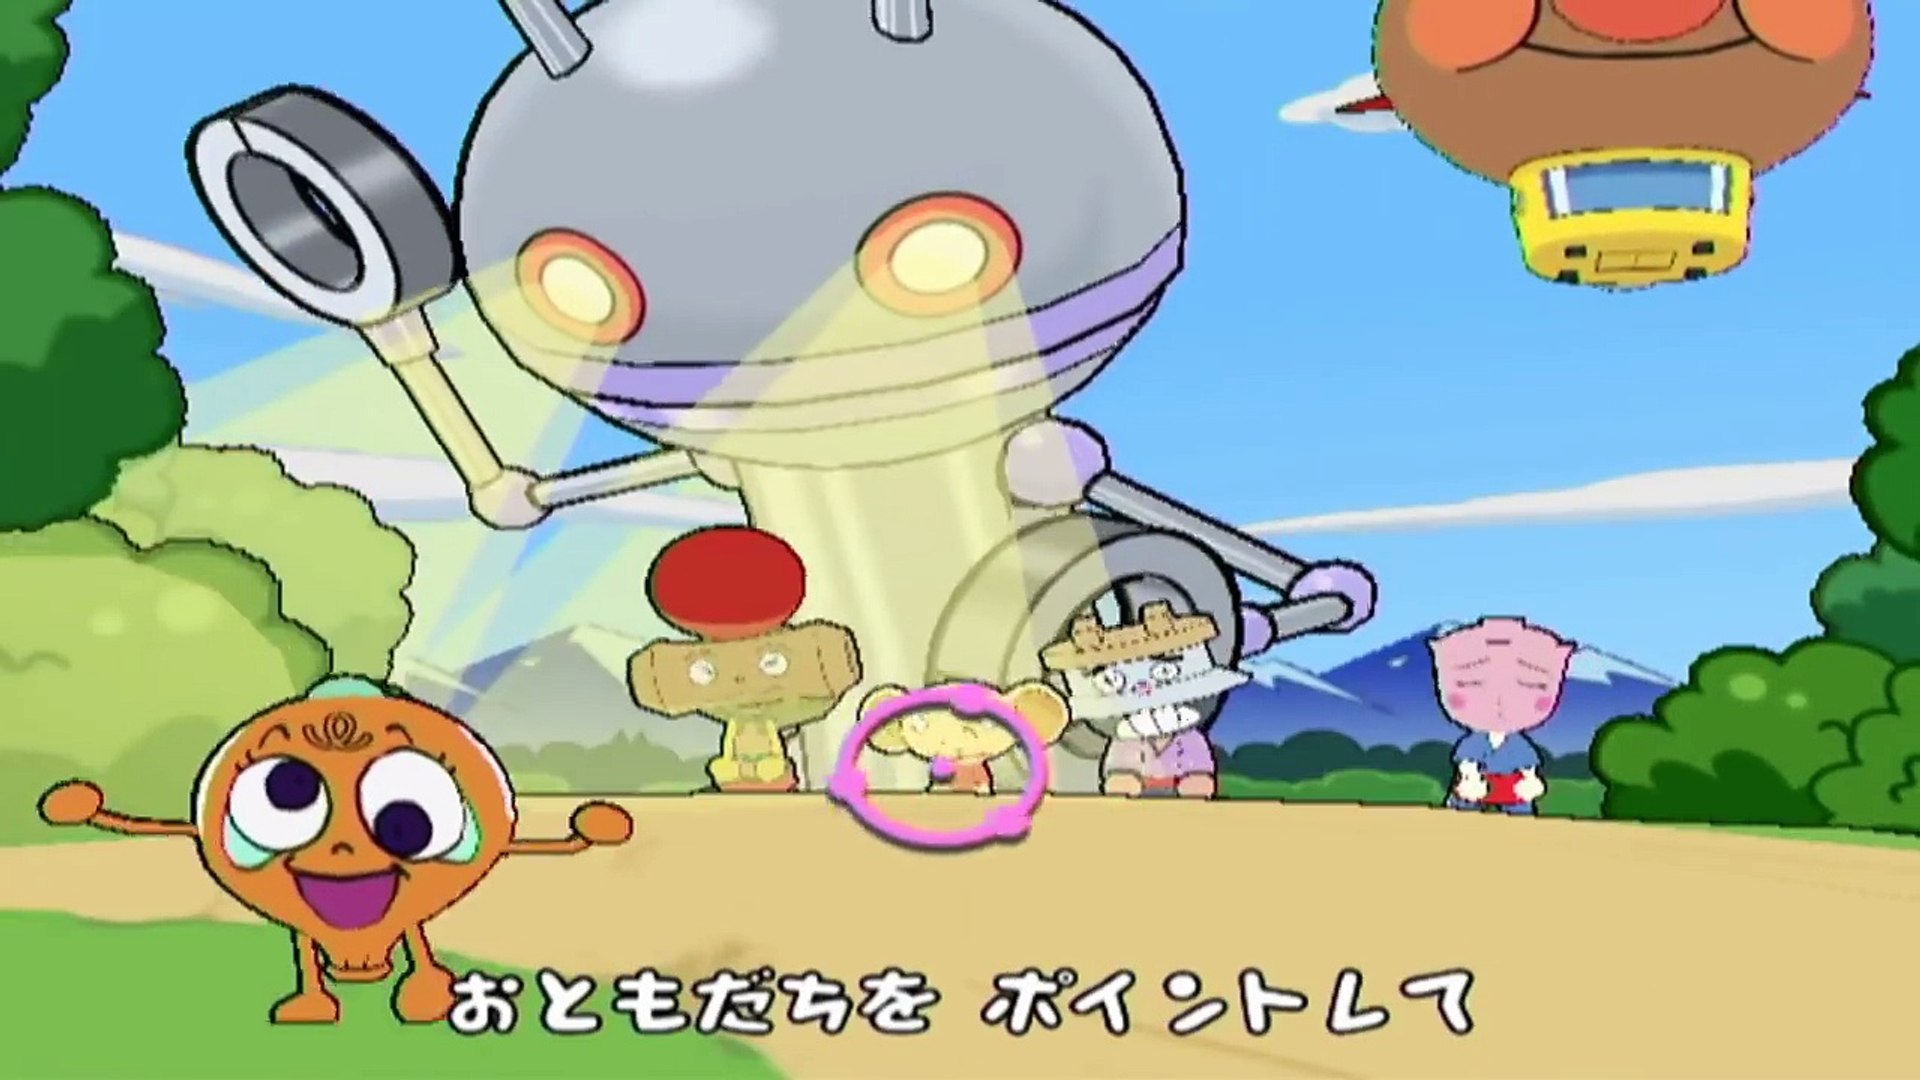 アンパンマンにこにこパーティー クリームパンダ 高画質 アニメ だだんだんで大暴れ Anpanman Japanese Tv Game Nintendo Wii Dailymotion Video